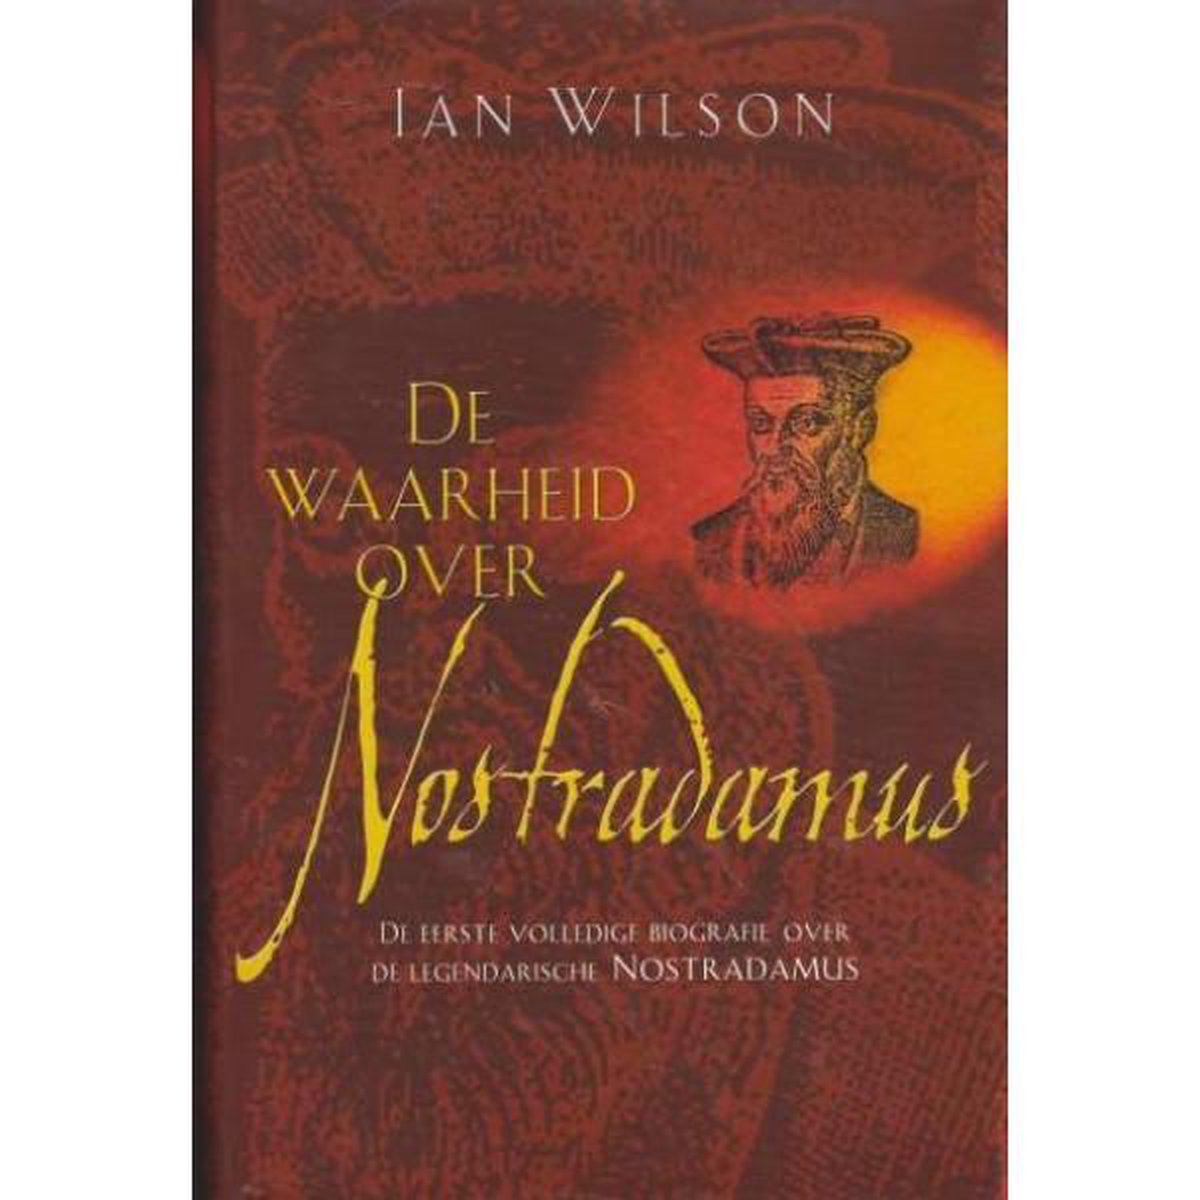 De waarheid over Nostradamus